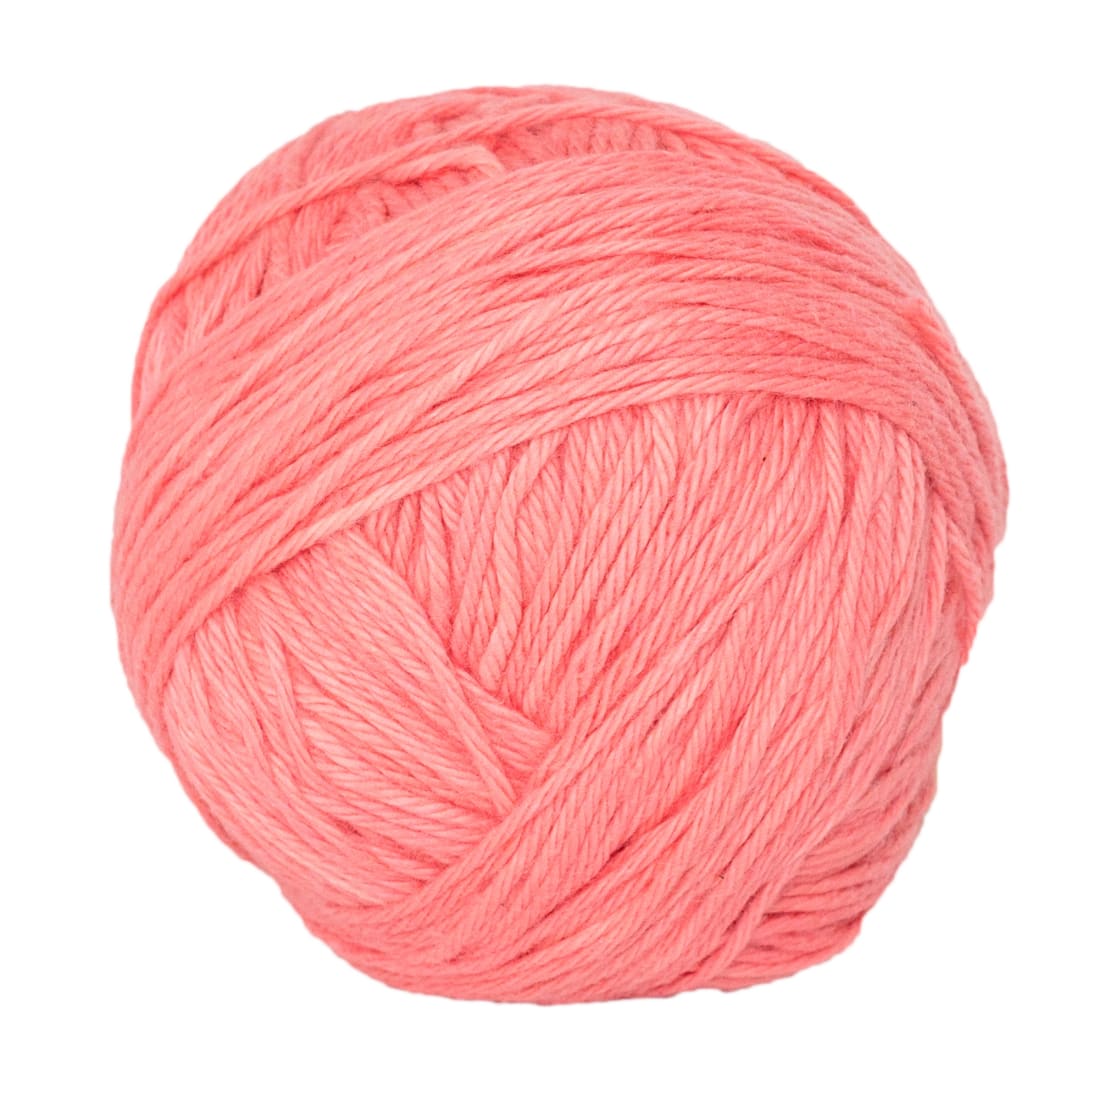 Fair Trade Pink Yarn Ball - Naturally 